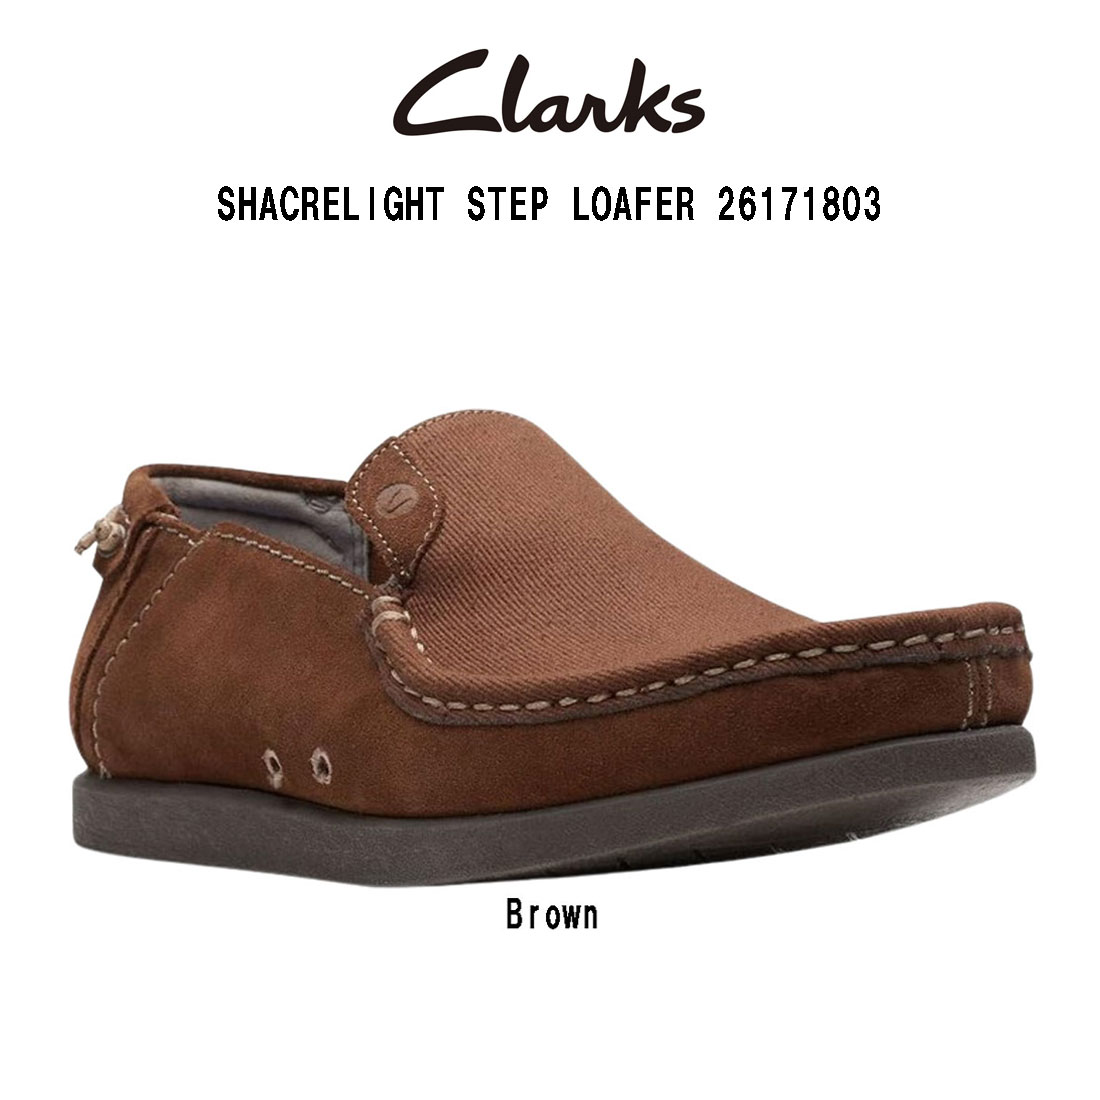 CLARKS(クラークス)シェイカー ローファー シューズ ブラウン スエード テキスタイル カジュアル 男性用 メンズ SHACRELIGHT STEP LOAFER 26171803